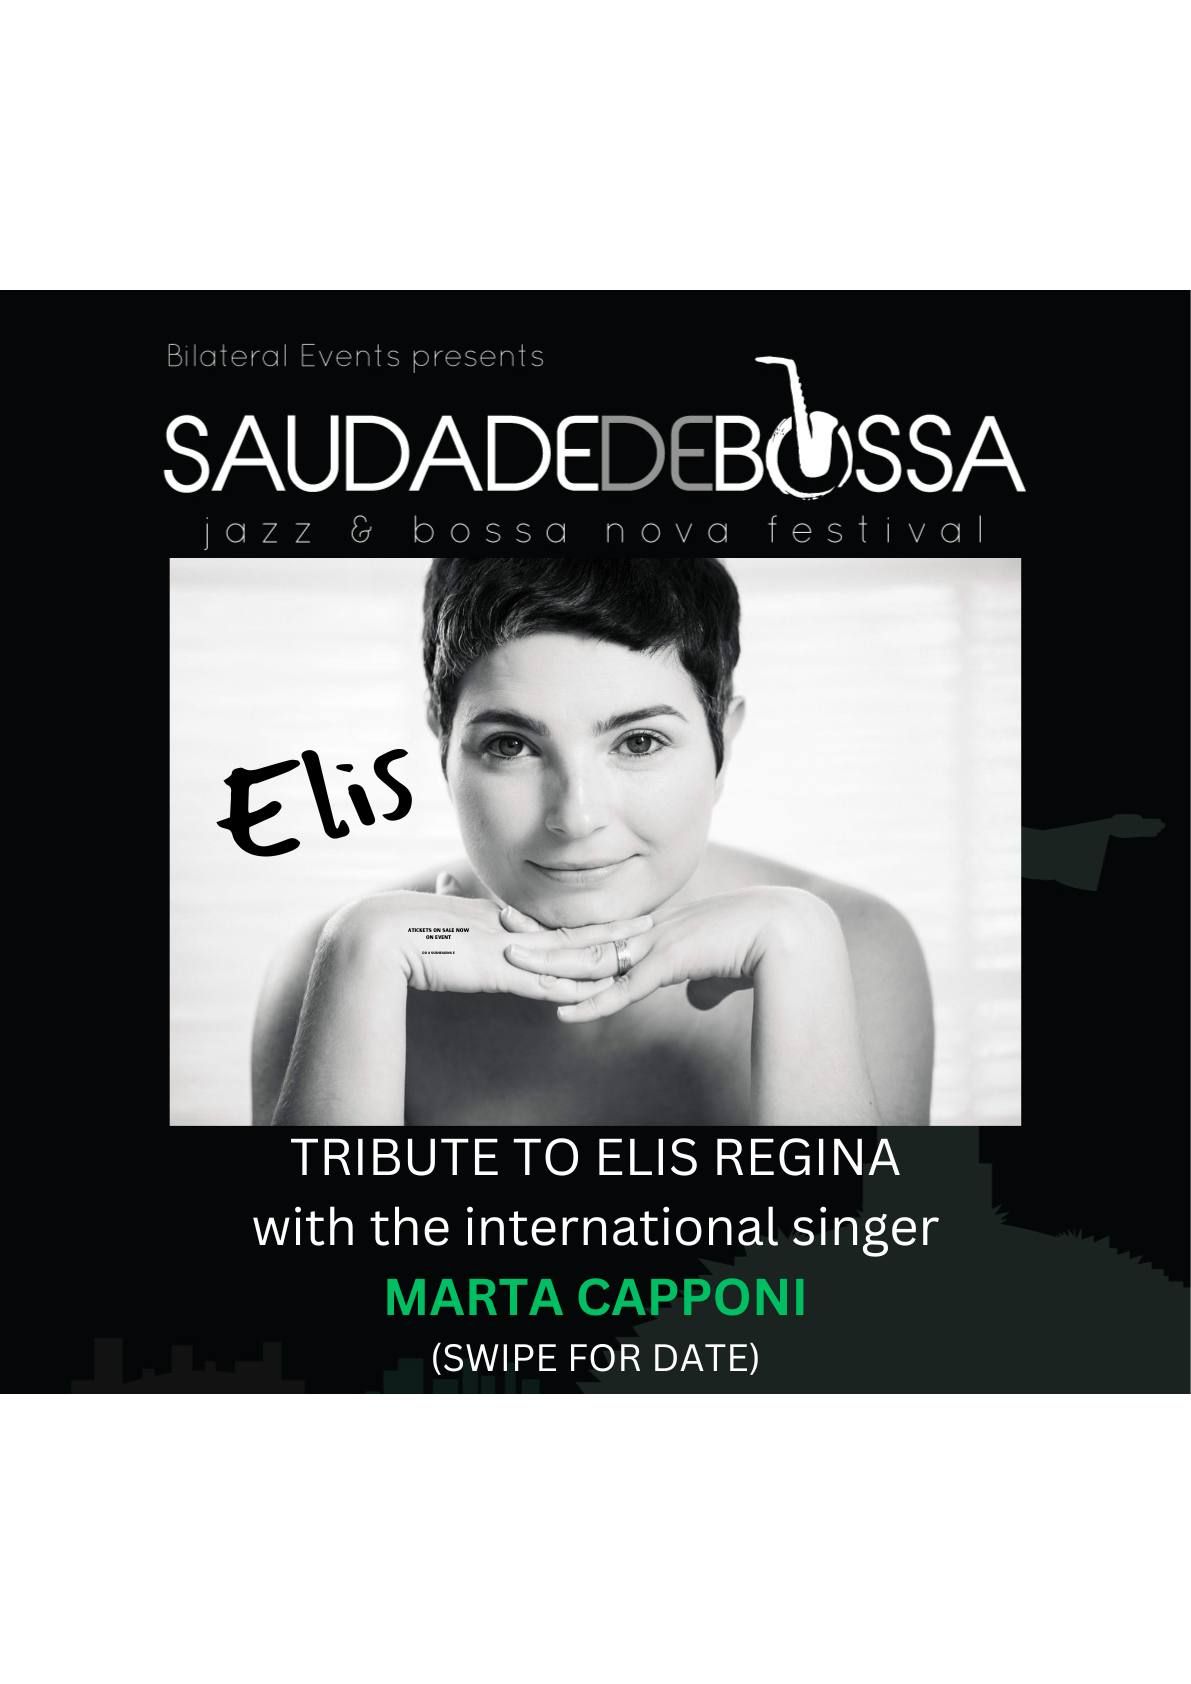 SAUDADE DE BOSSA  Presents "A Tribute To Elis Regina"